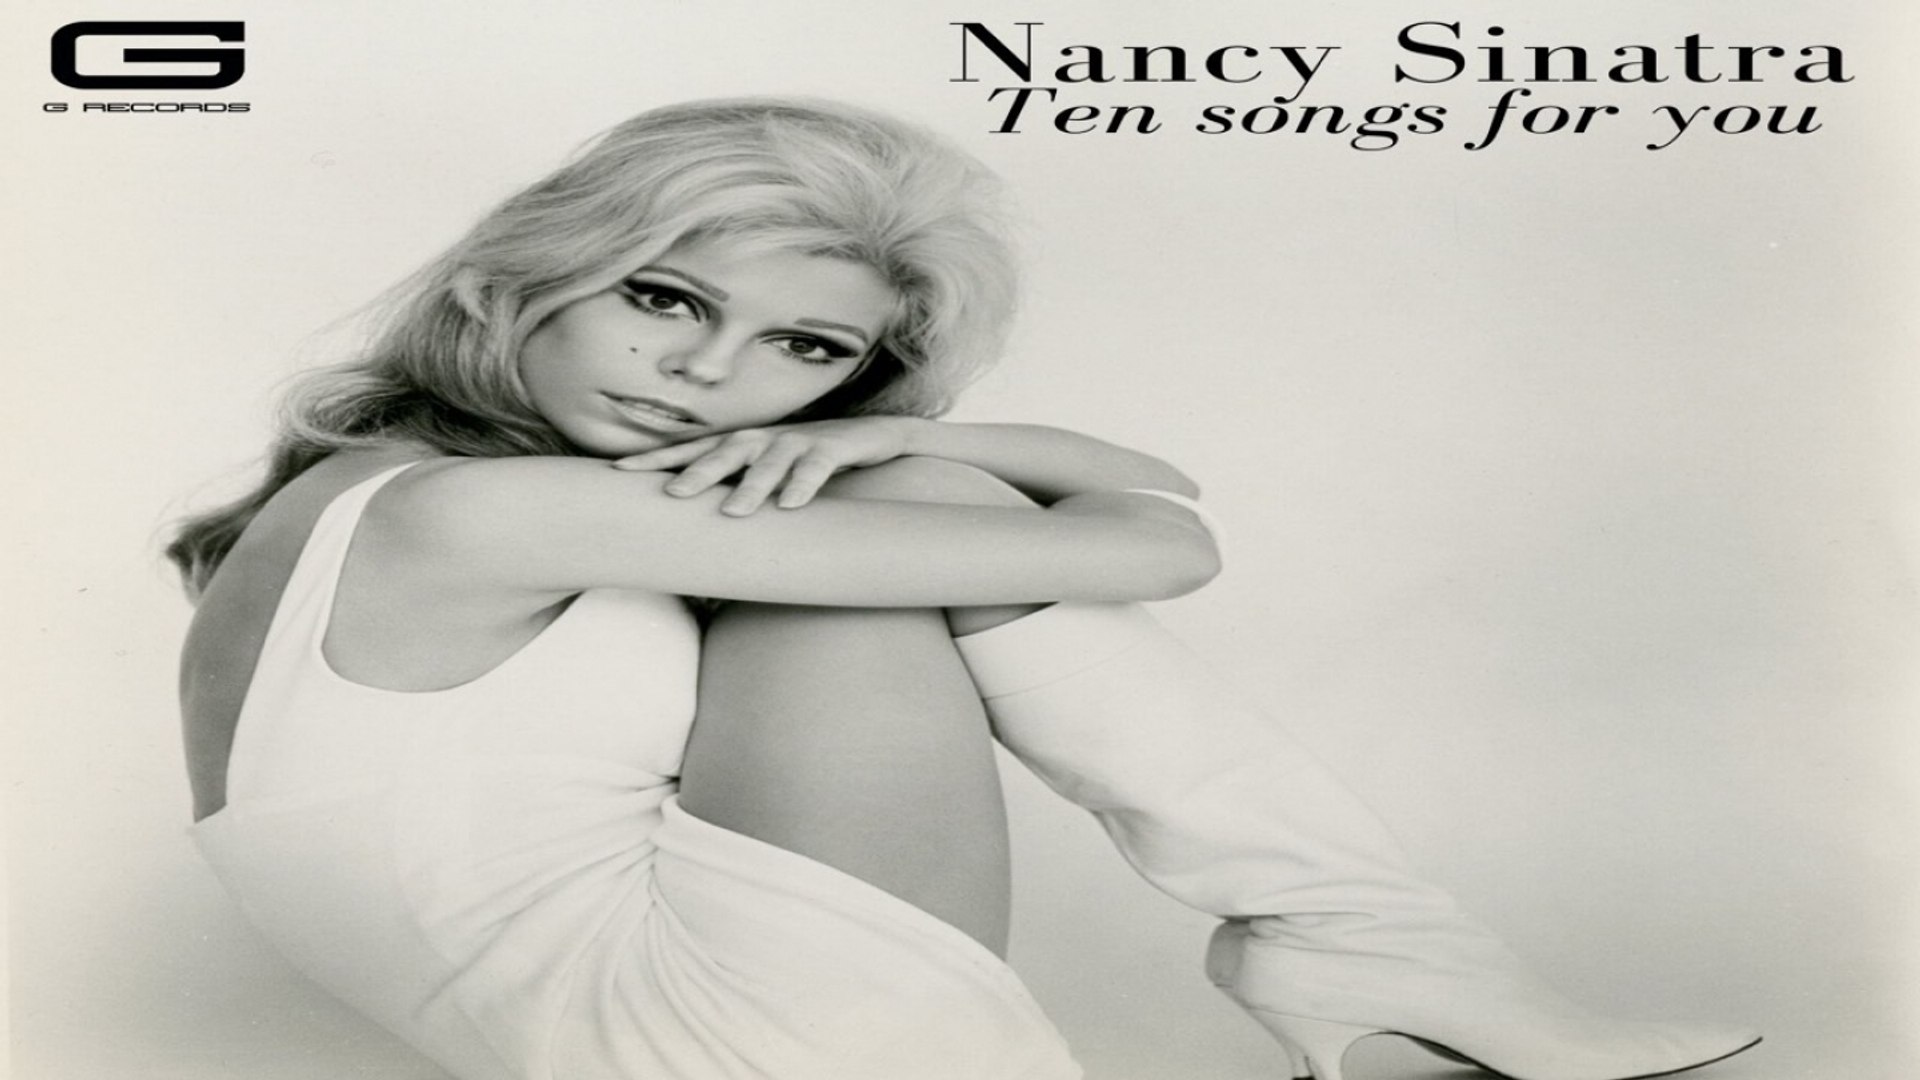 Nancy Sinatra - Bang bang - Video Dailymotion